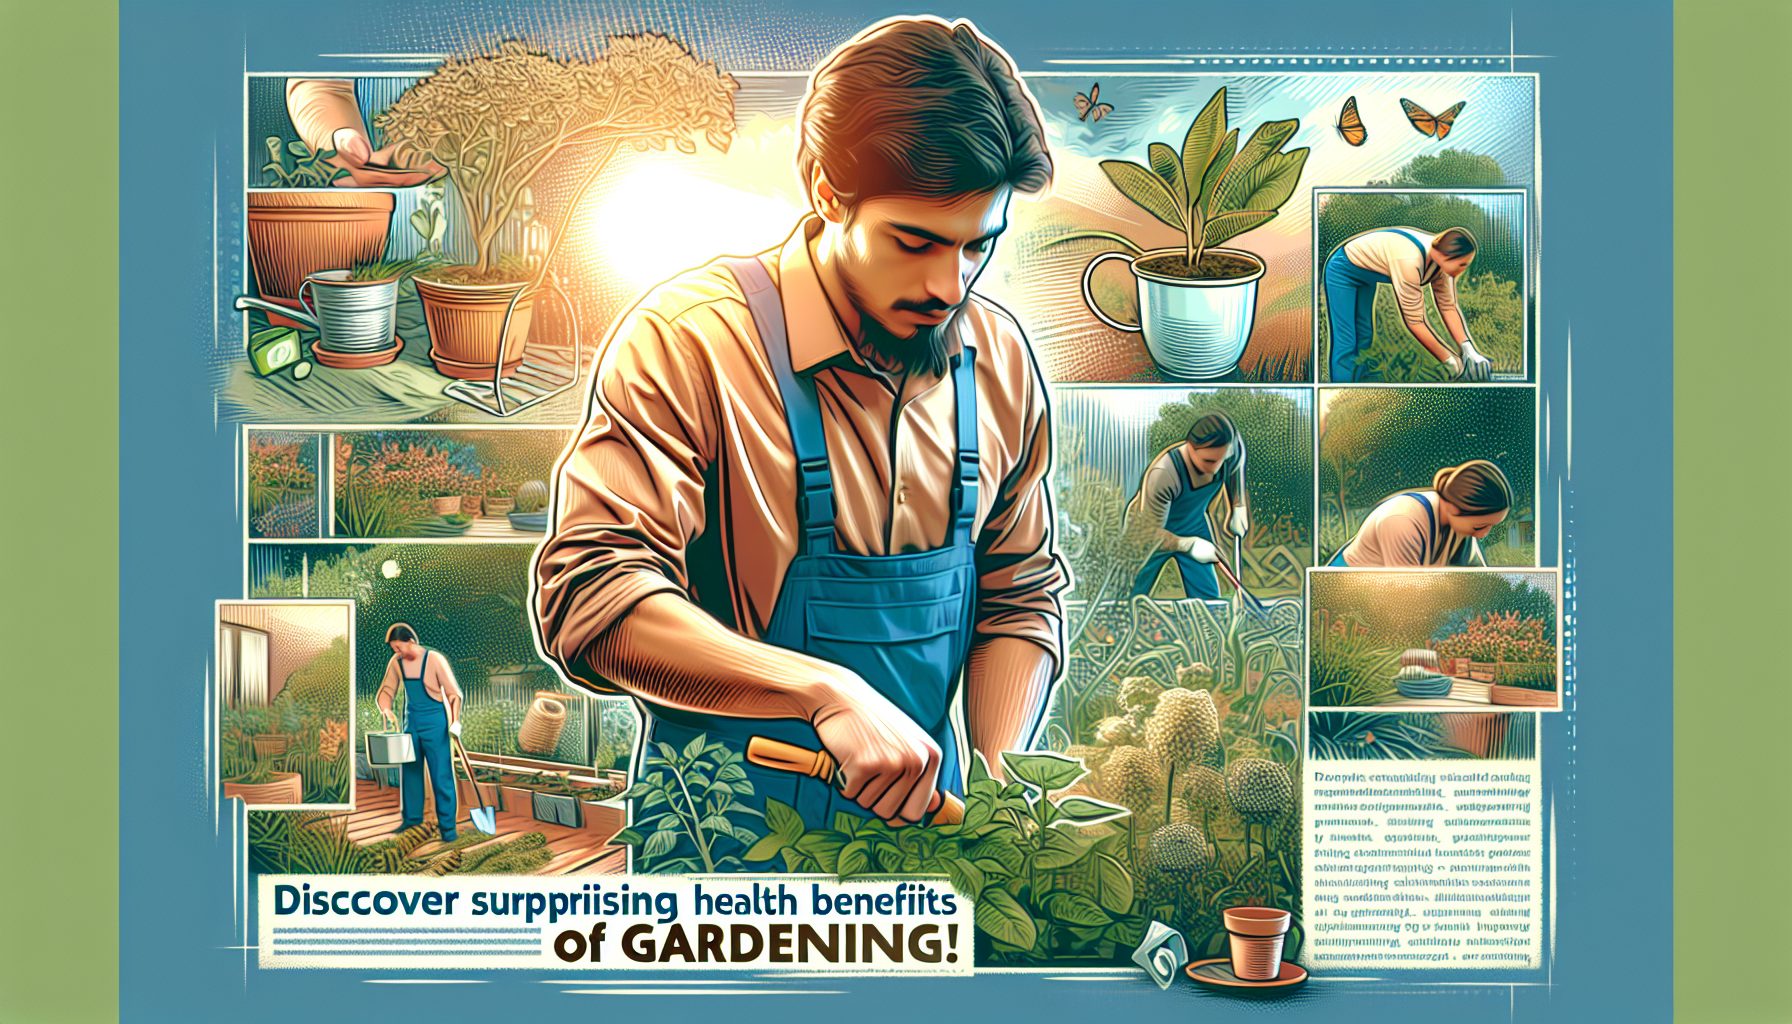 découvrez les bienfaits insoupçonnés du jardinage sur la santé : renforcement du système immunitaire, diminution du stress, perte de calories... apprenez-en plus !